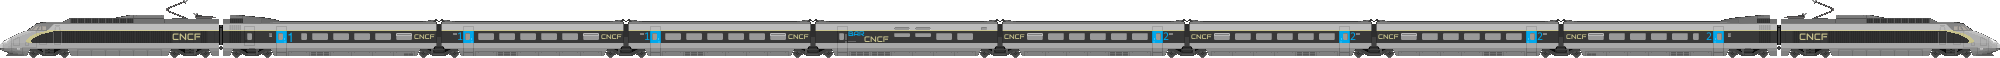 TGV PSE CNCF